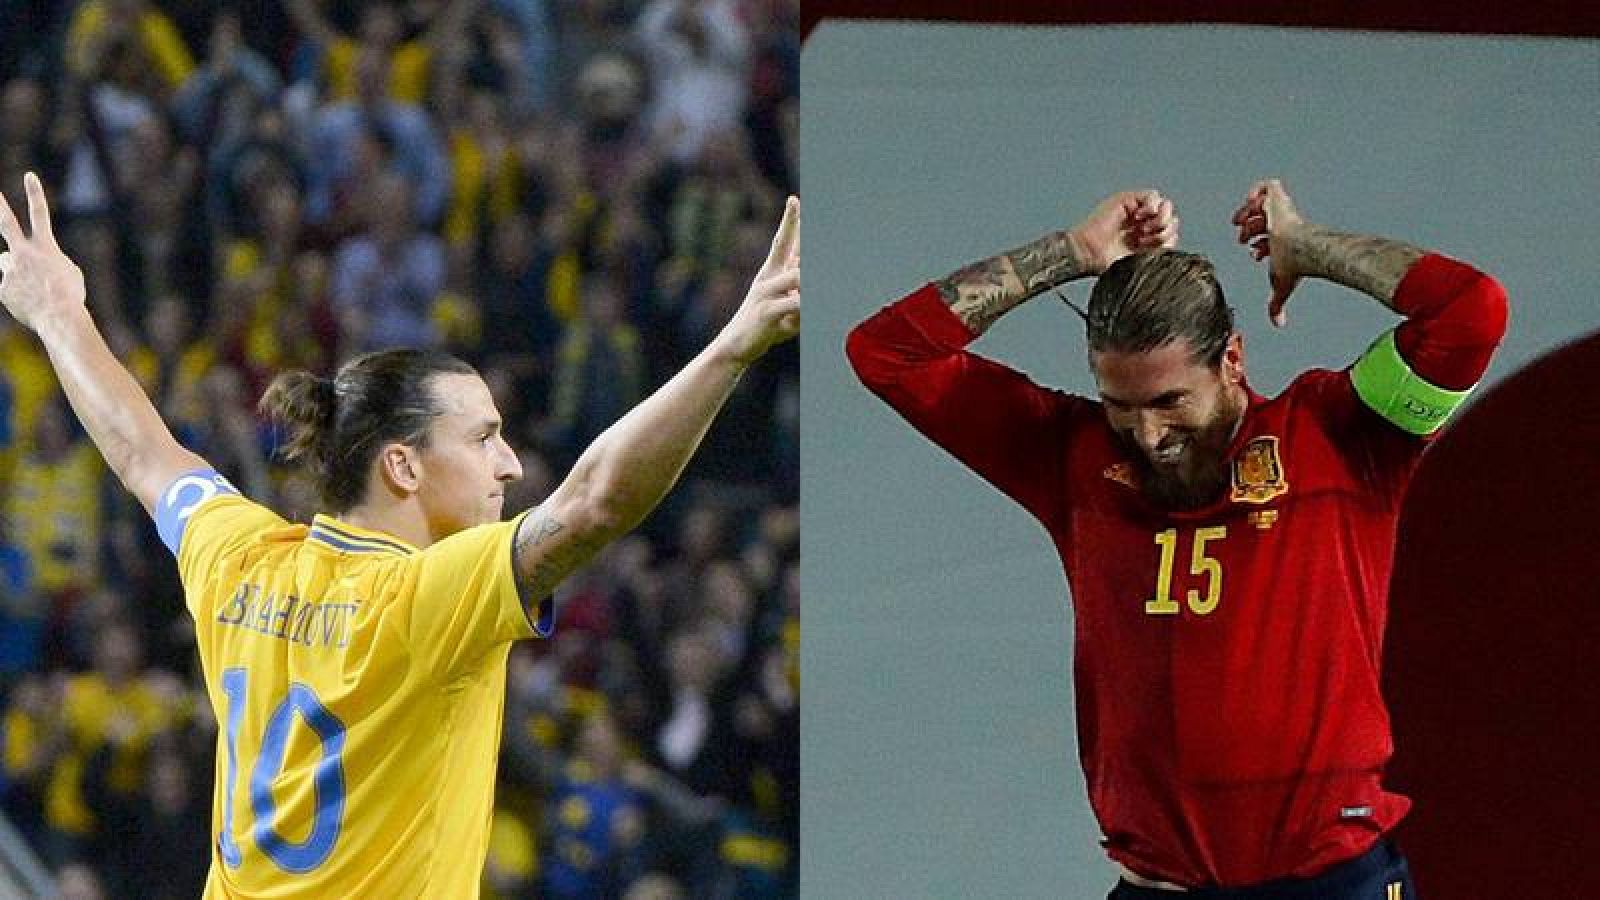 compensación que te diviertas Lo anterior Los partidos entre Suecia y España, un duelo Ibra vs Ramos